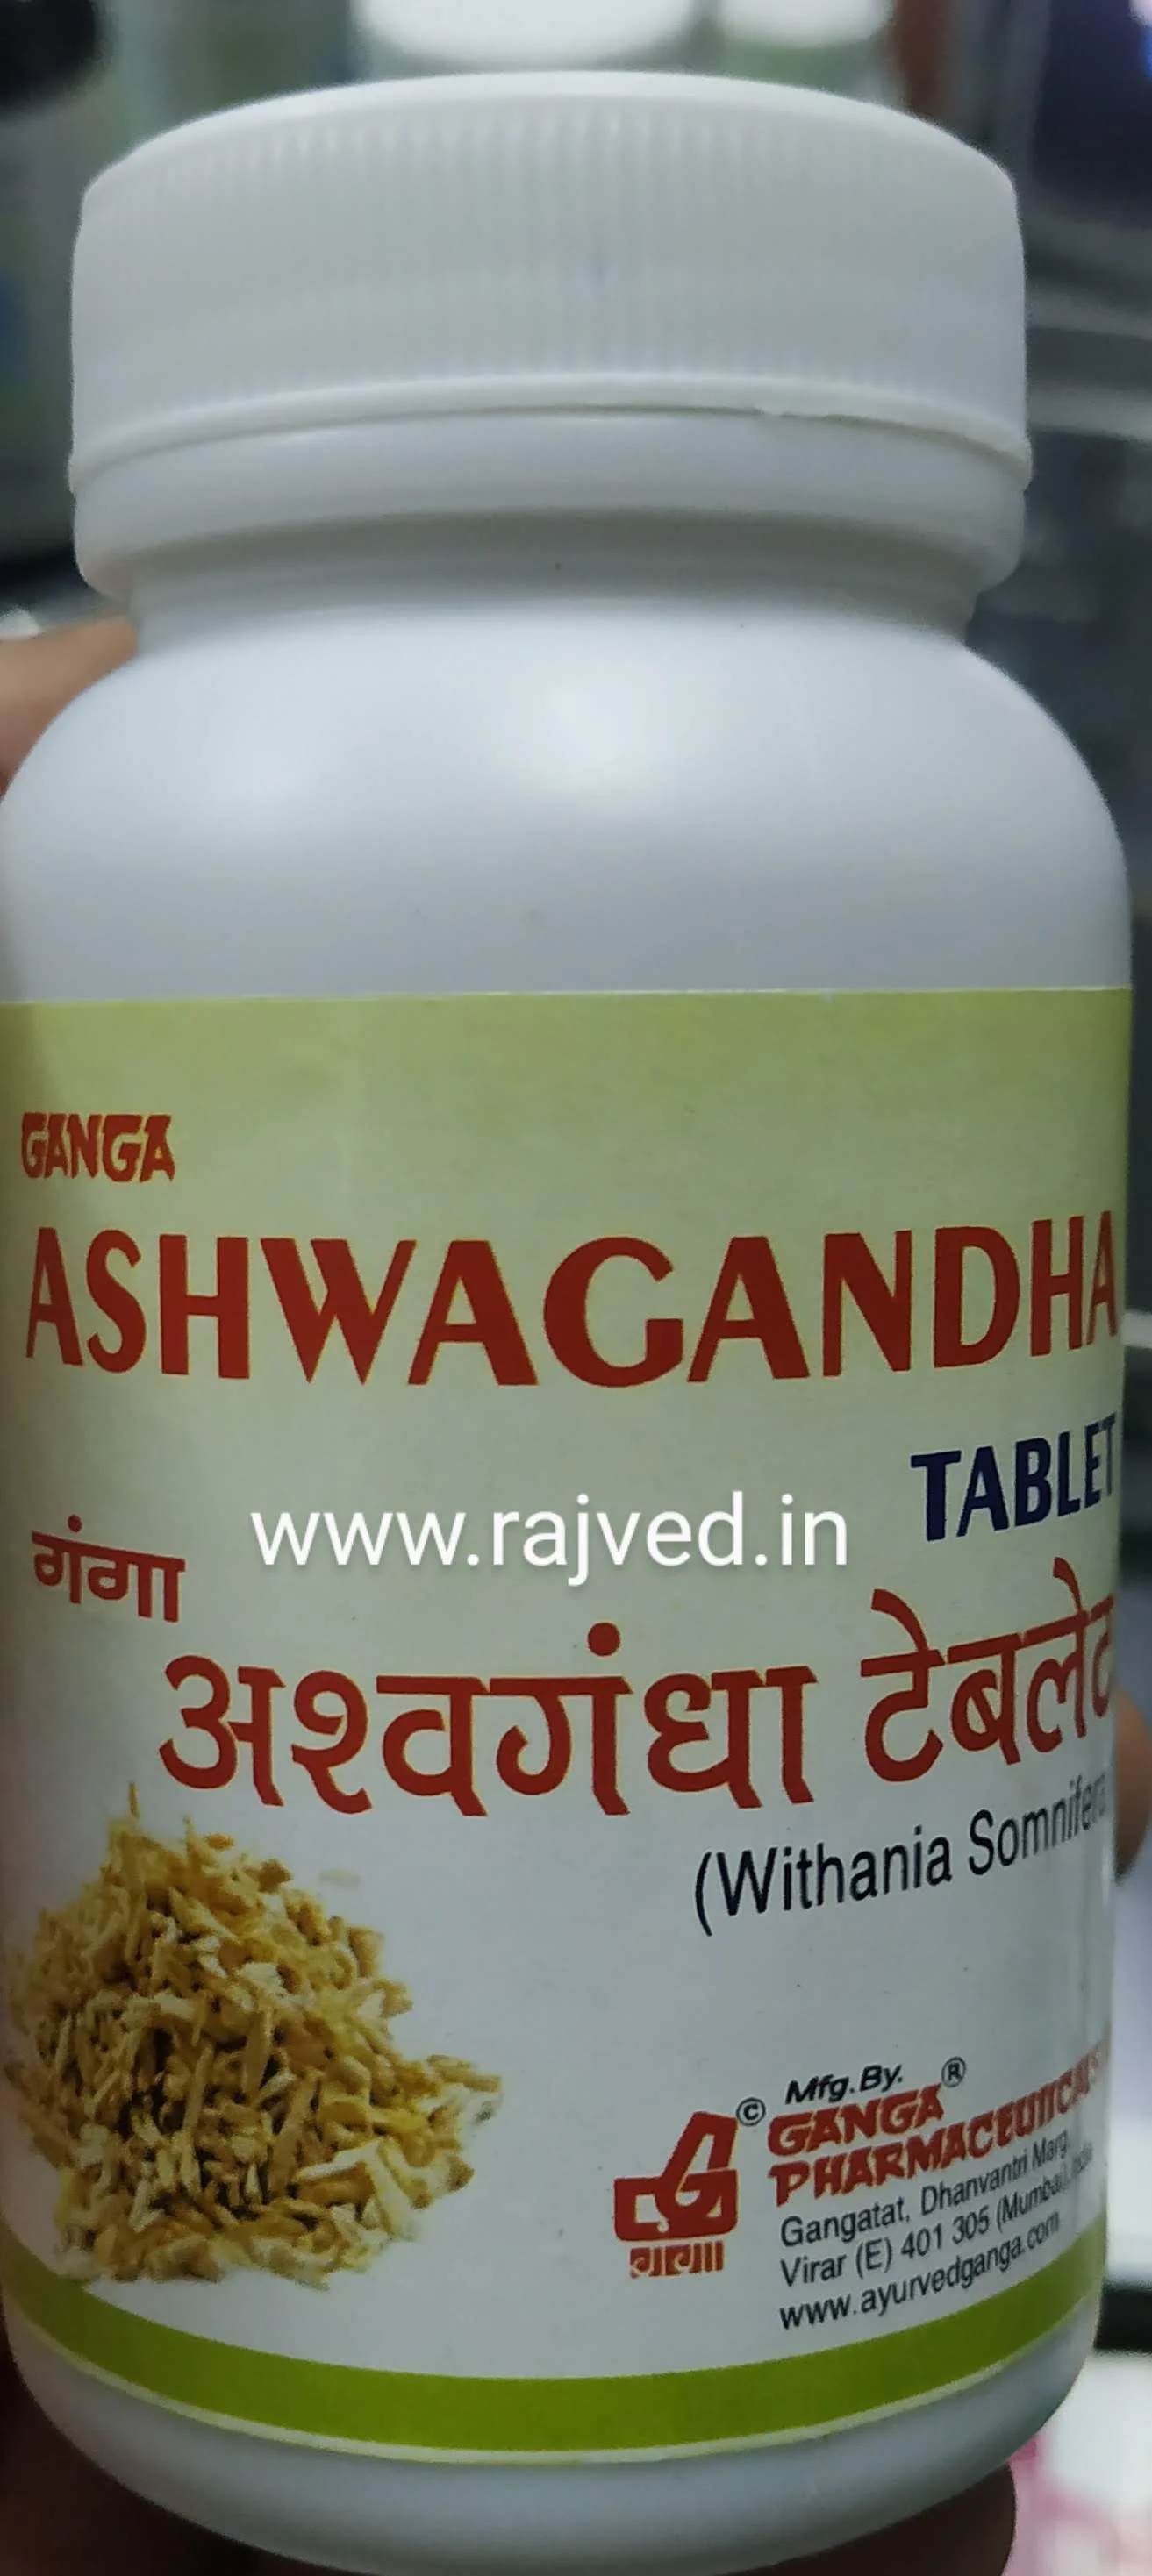 ashwagandha tablet 200 tab upto 20% off Ganga Pharmaceuticals